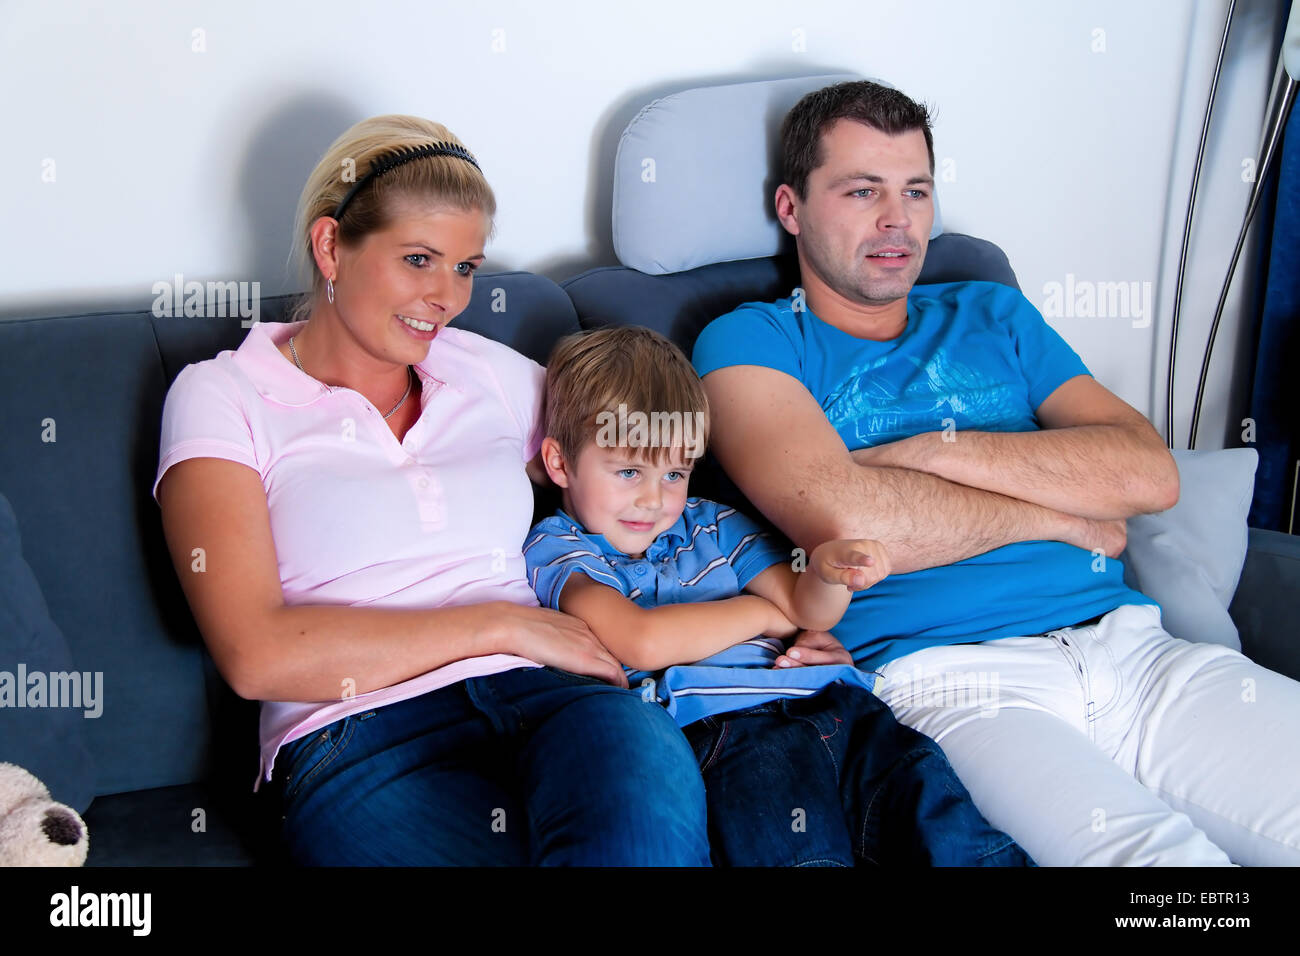 family watching TV Stock Photo